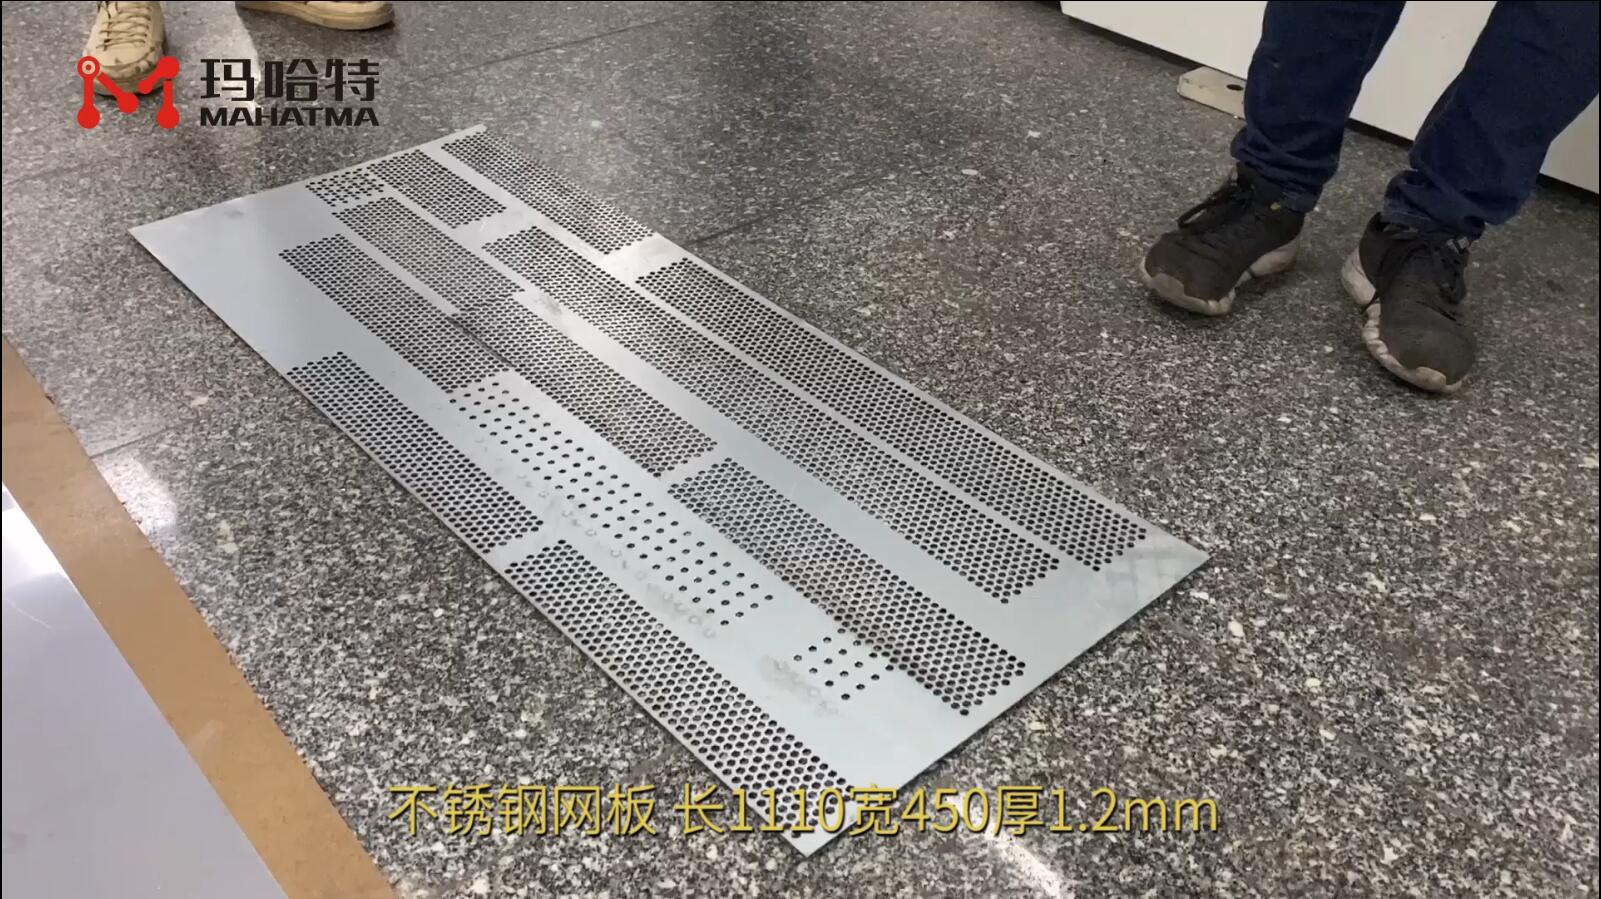 不锈钢网板 MHT40-1300 长方形1110宽450厚1.2mm